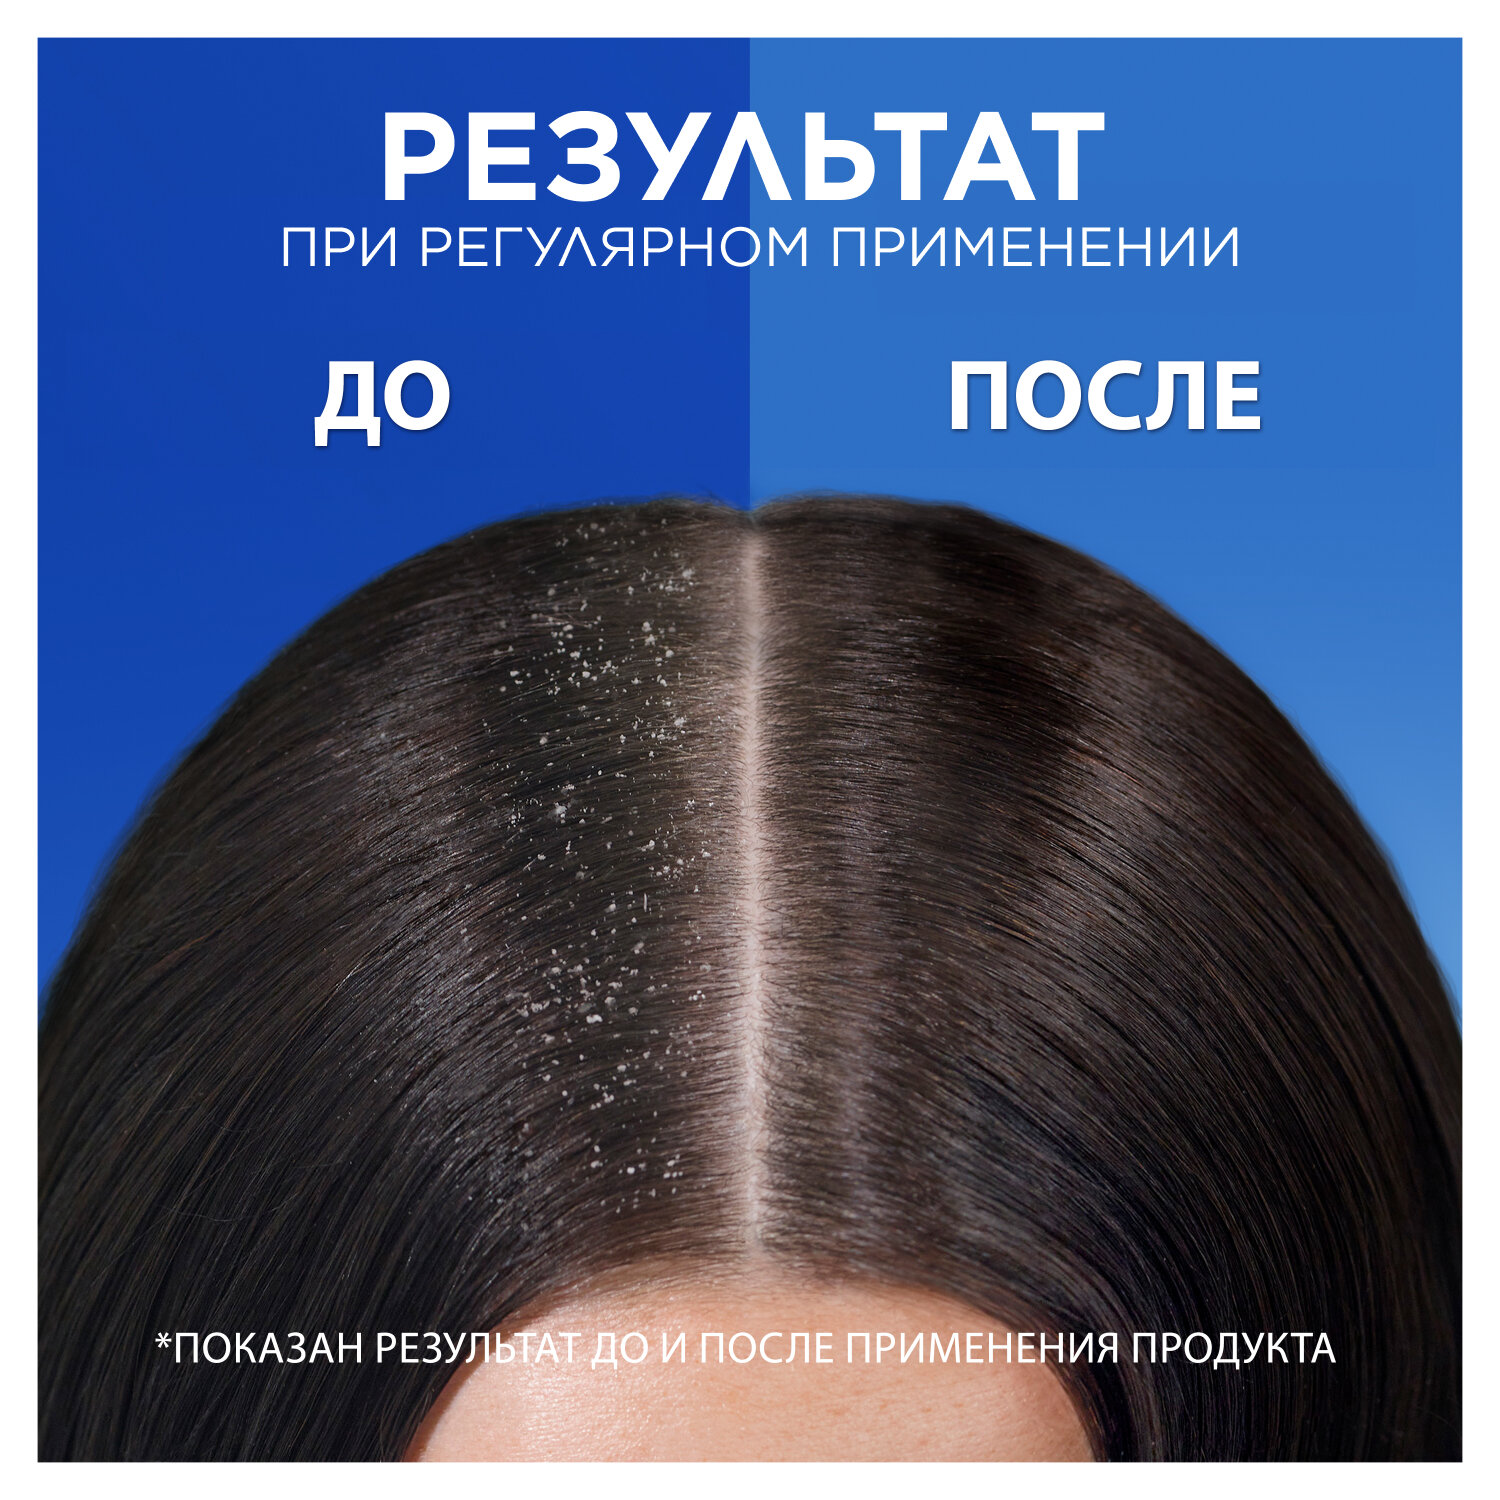 Pantene Набор для семьи Шампунь для волос Интенсивное Восстановление + Шампунь от перхоти 2в1 Основной уход, 900 мл